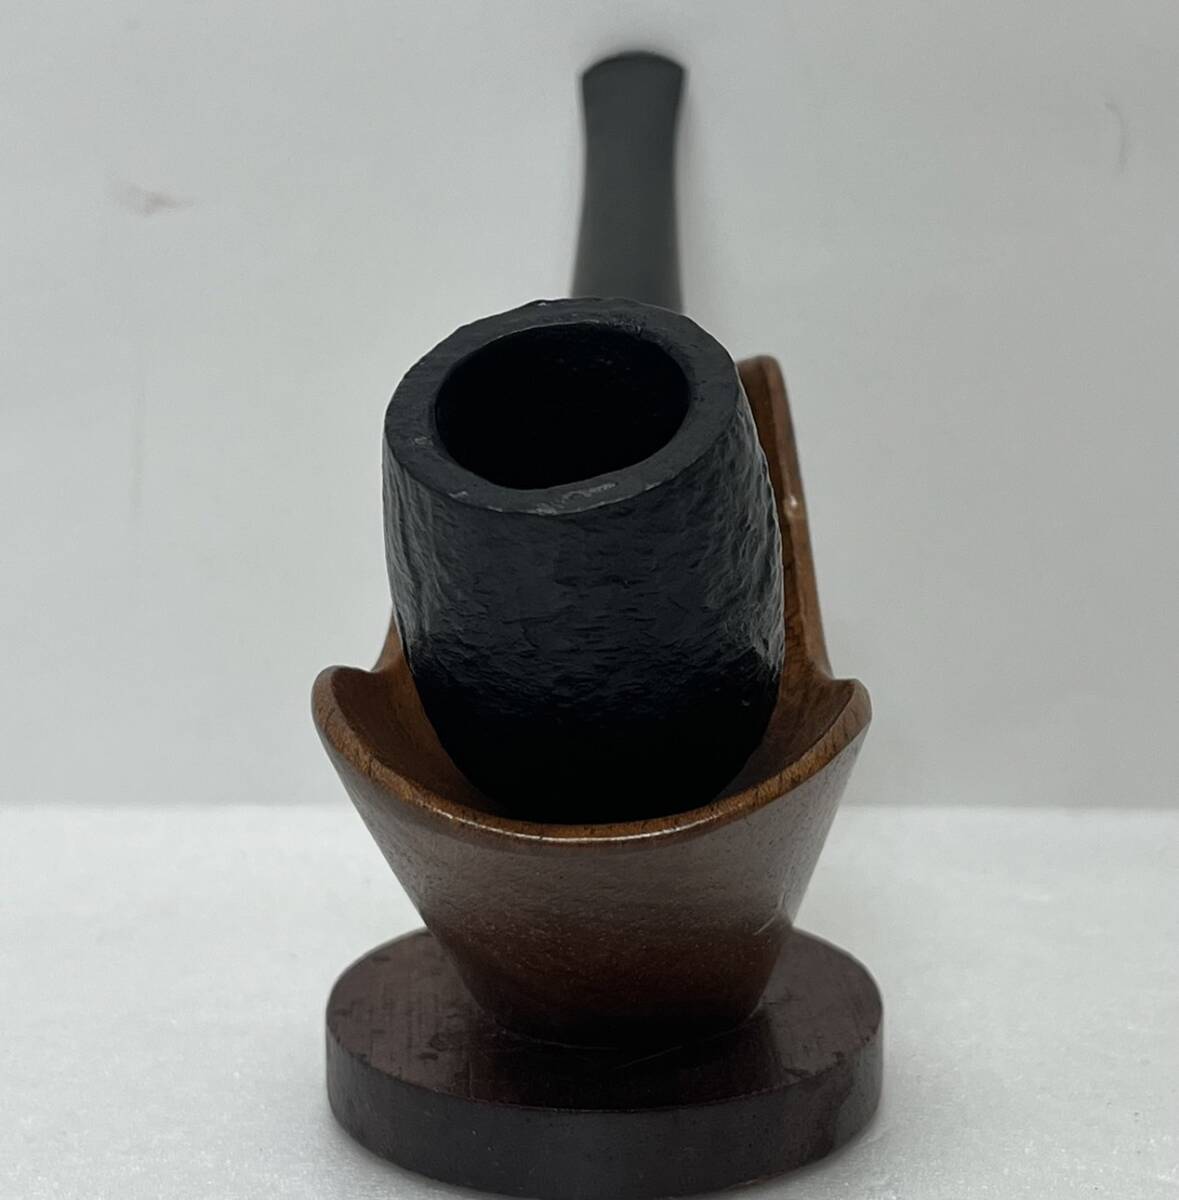 【ST17994MG】CHACOM SANDBLAST/シャコム サンドブラスト 28J パイプ 煙管 フランス製 喫煙具 全長:約13.7cm 重さ:約31.6g 高さ:約4.4cmの画像2